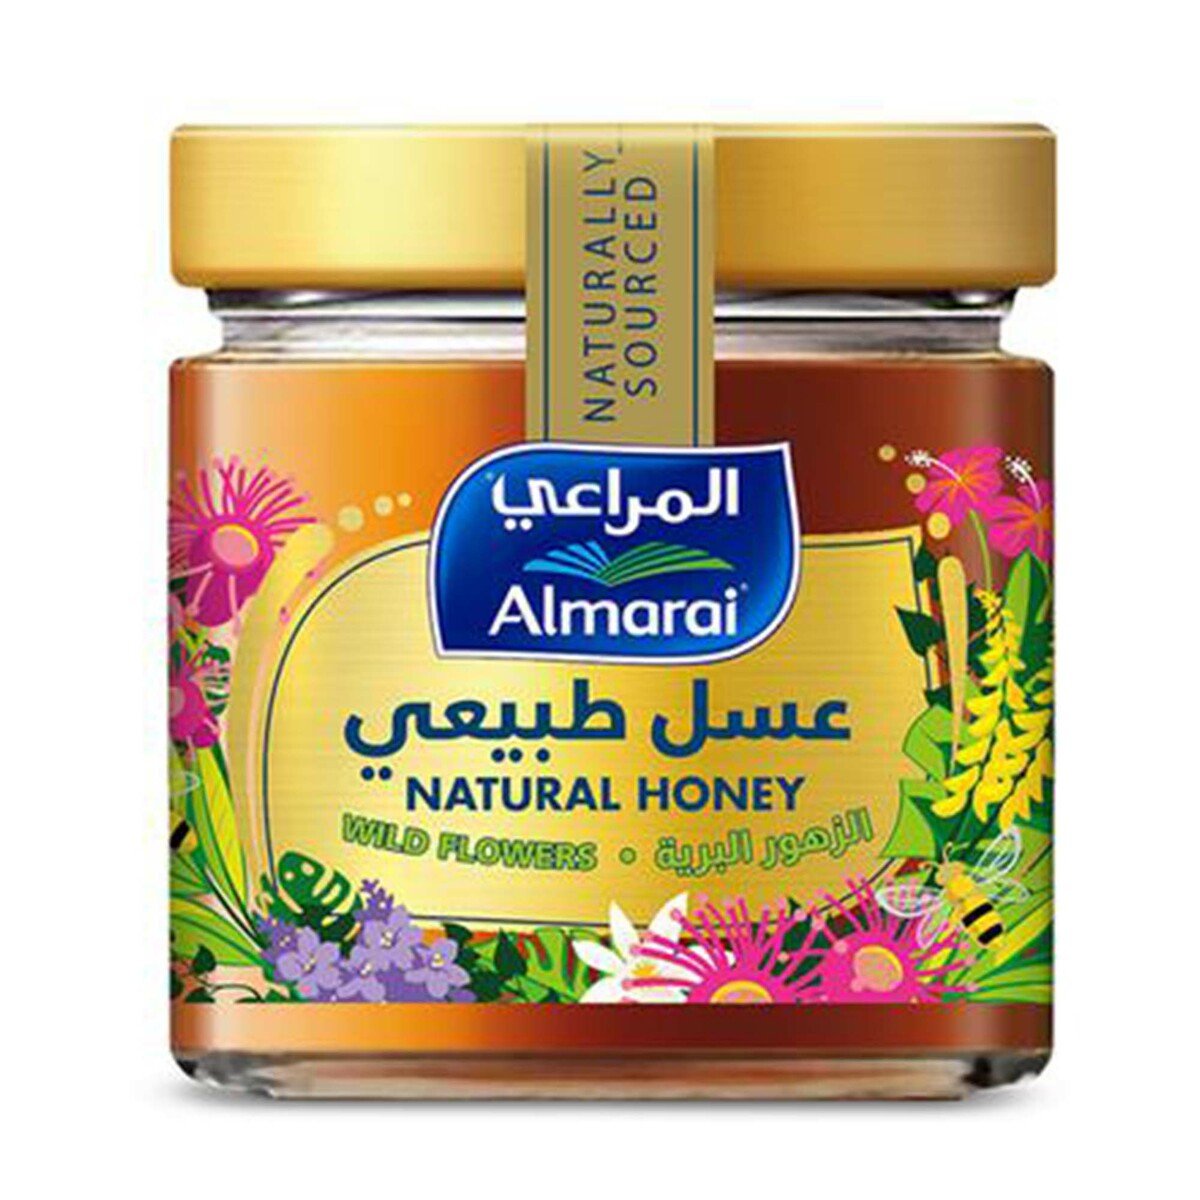 Buy Almarai Natural Honey, 500 g Online at Best Price | Honey | Lulu KSA in UAE